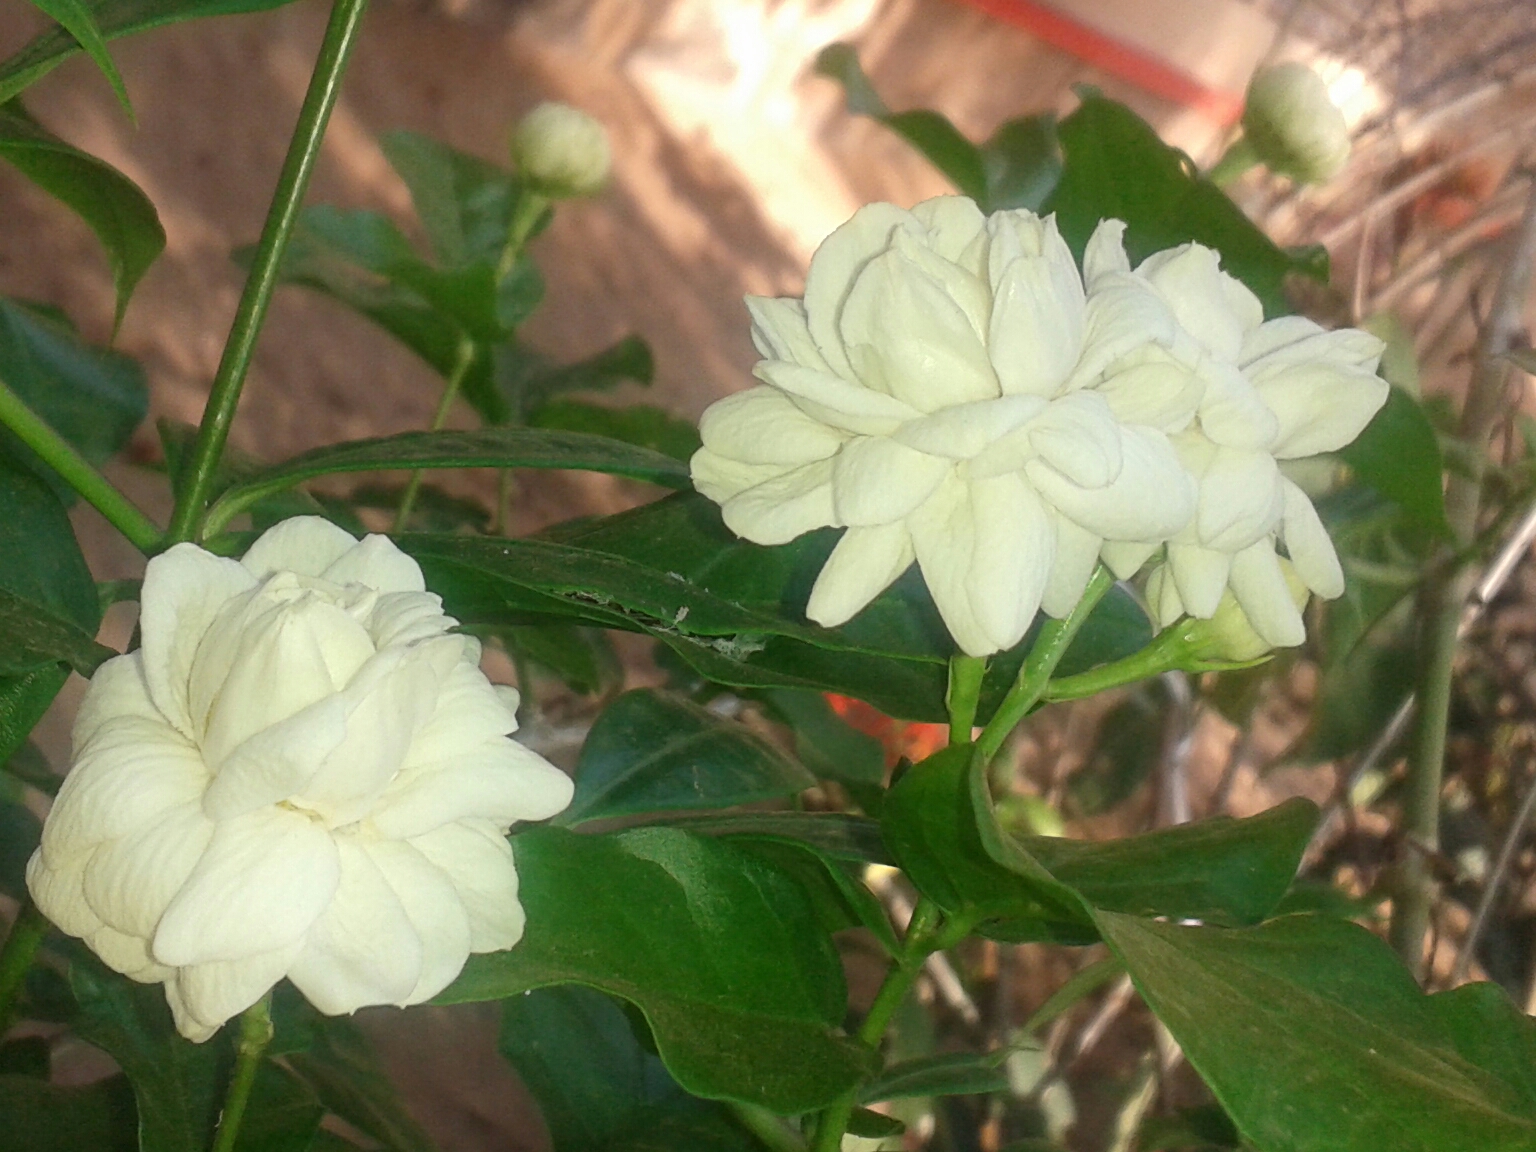 A double-flowered cultivar Photograph by: AswiniKP